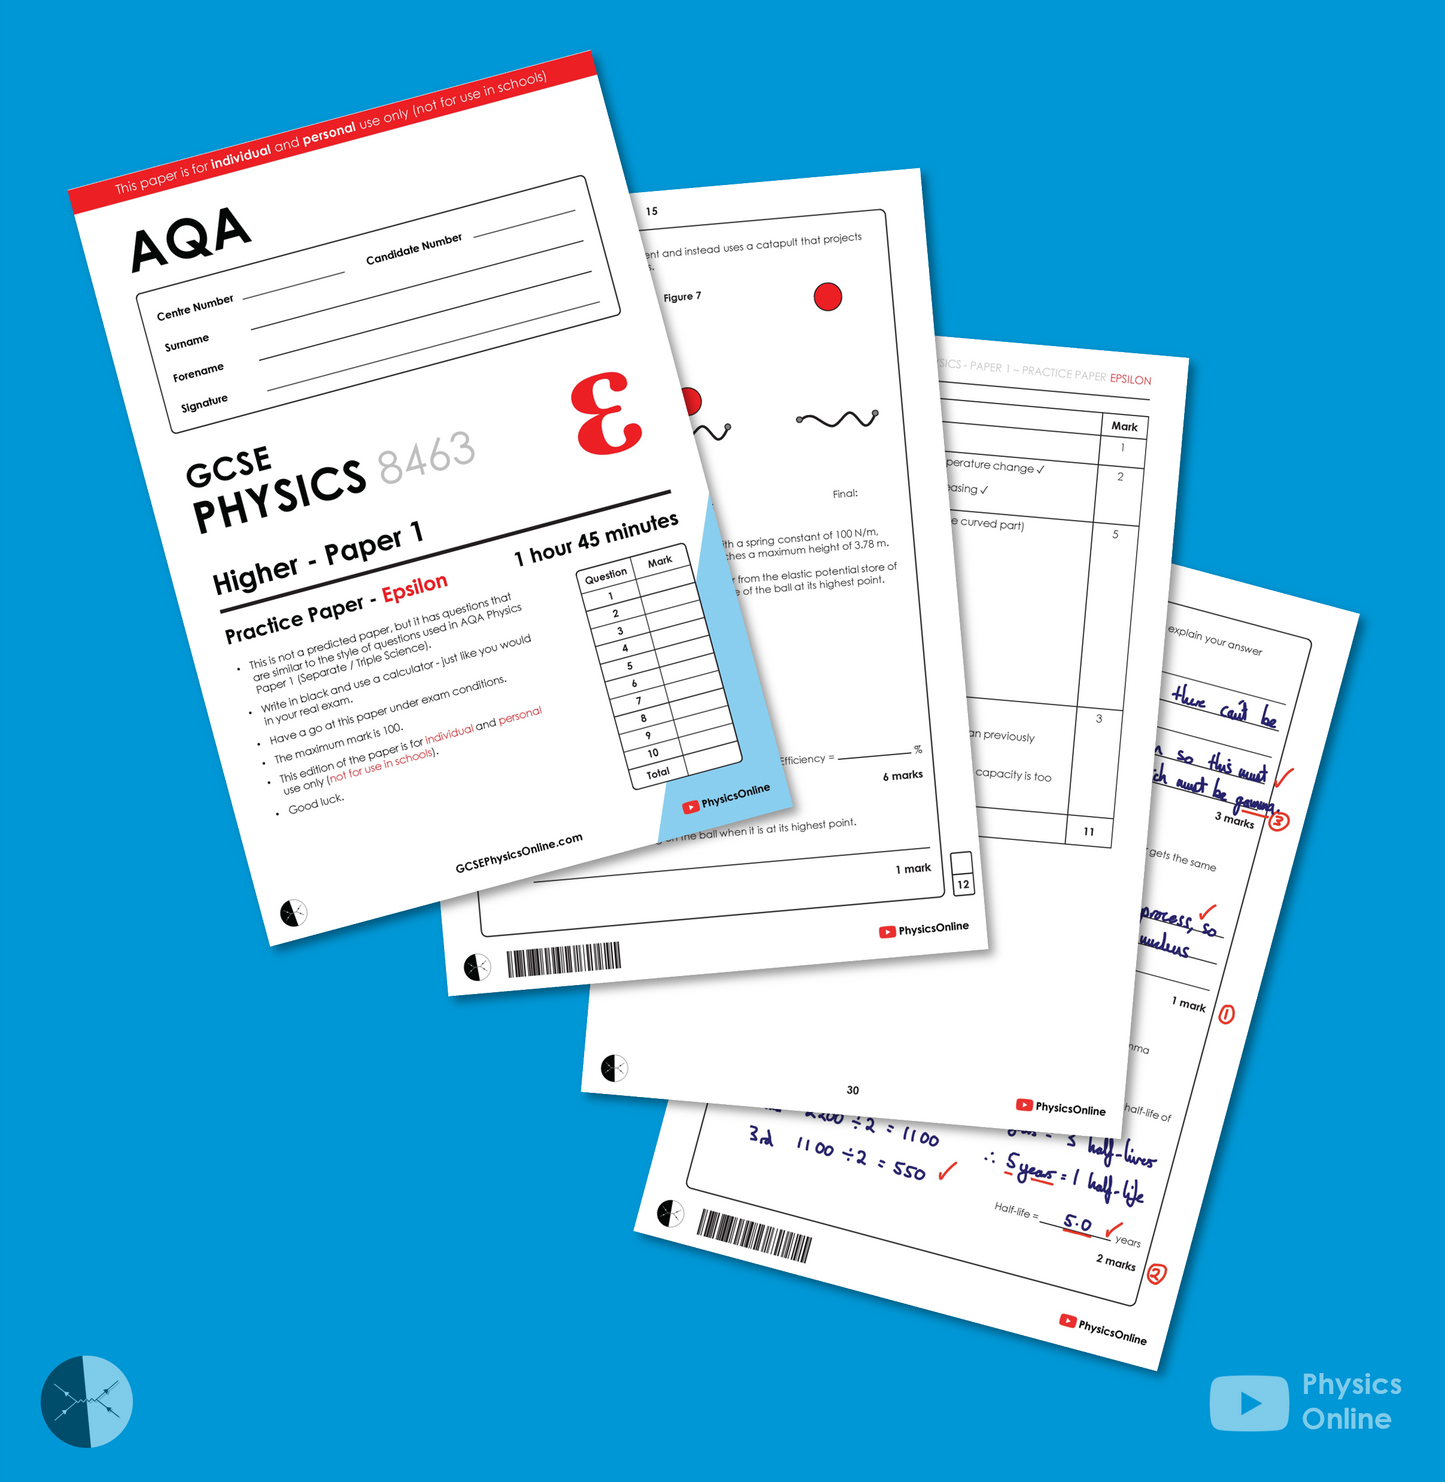 AQA Practice Paper | Paper 1 - Epsilon | Individual Issue | GCSE Physics